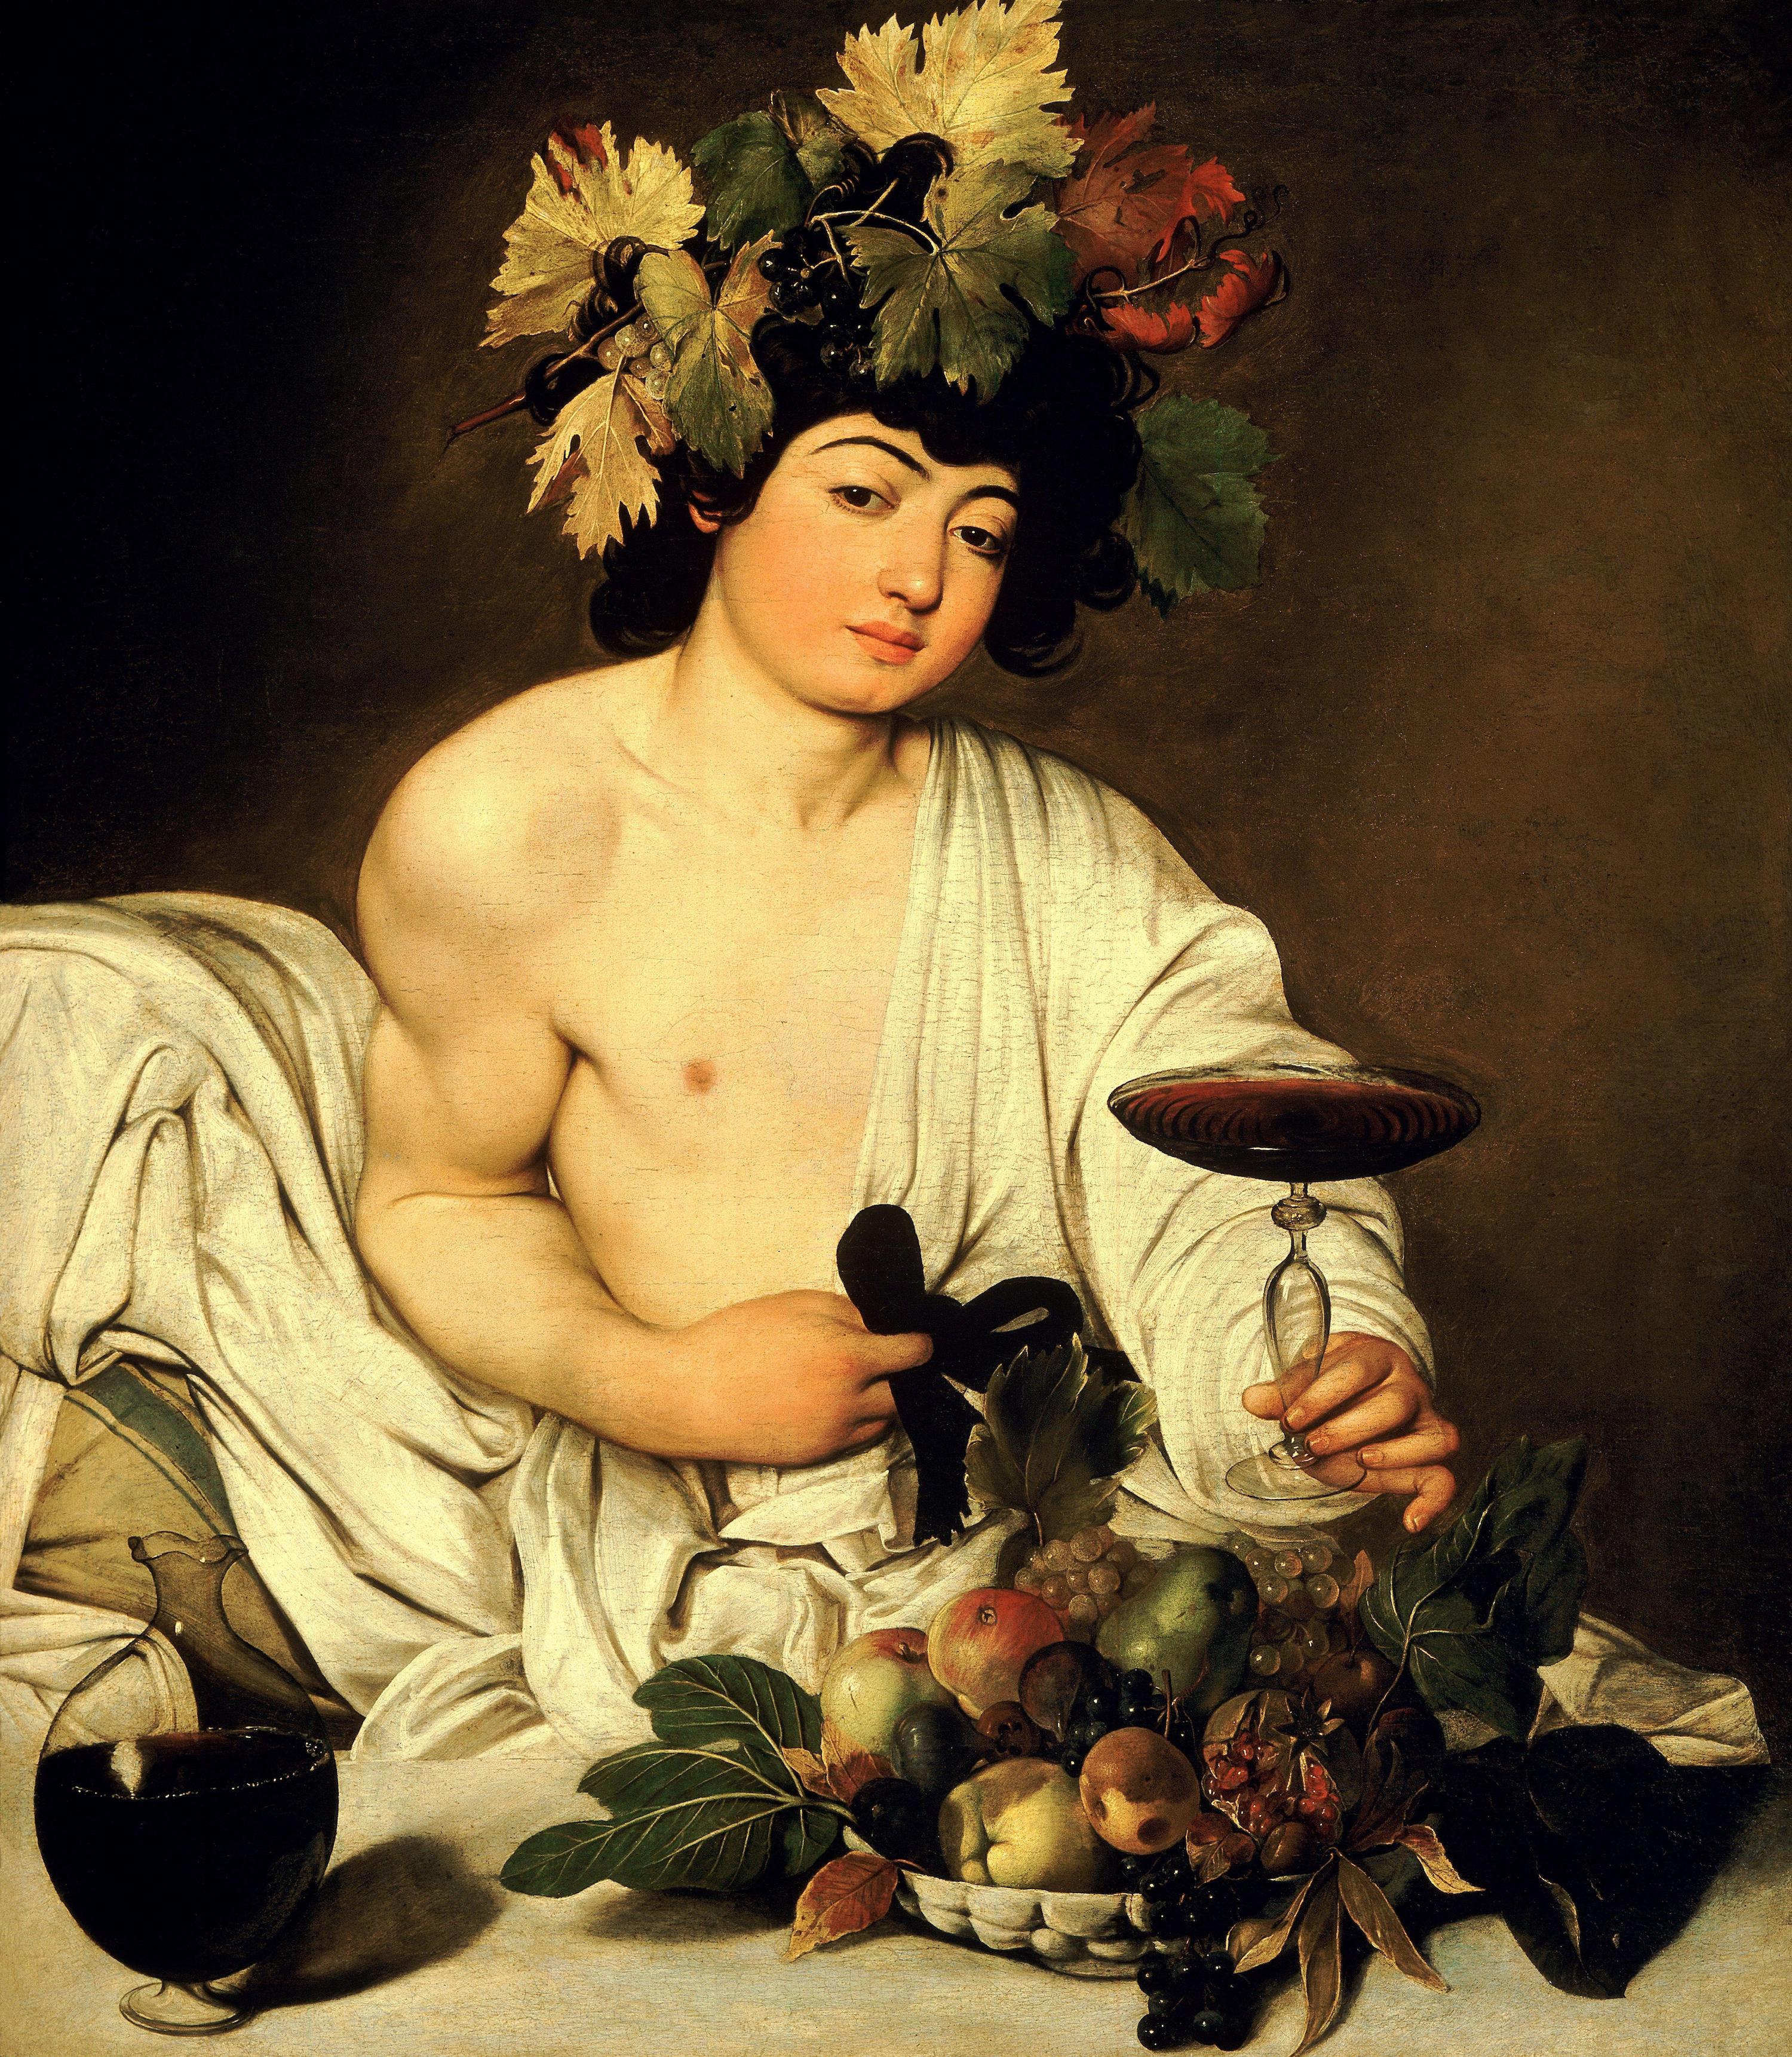 باخوس by  Caravaggio - تقريبًا ١٥٩٦ - ٩٥ × ٨٥ سم 